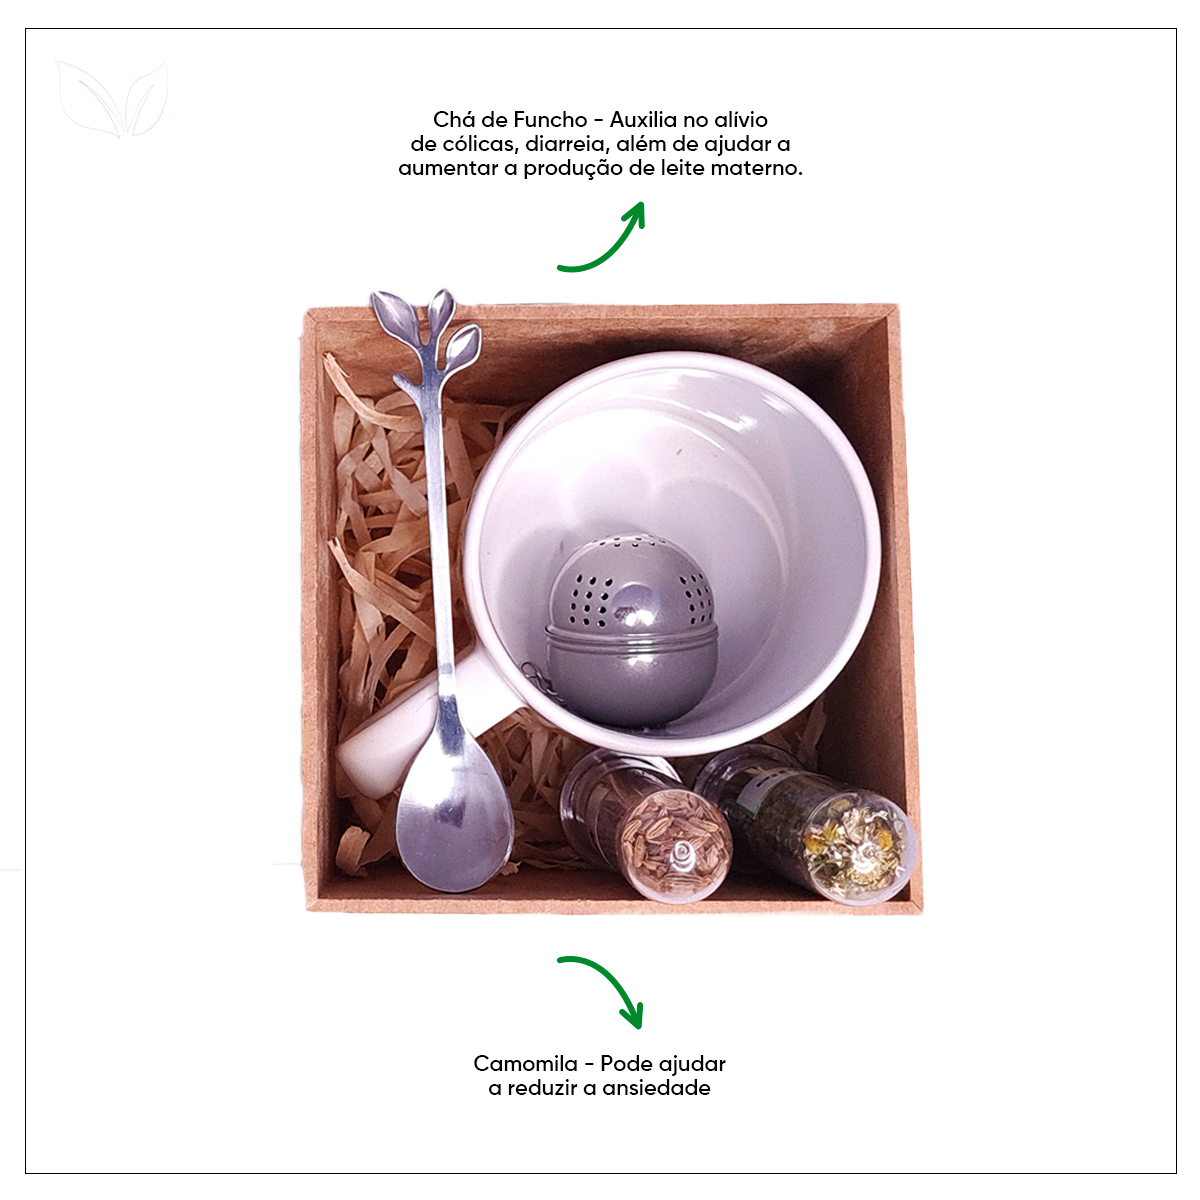 Kit de Chá Equilíbrio com Caneca Personalizada, Colher e Infusor